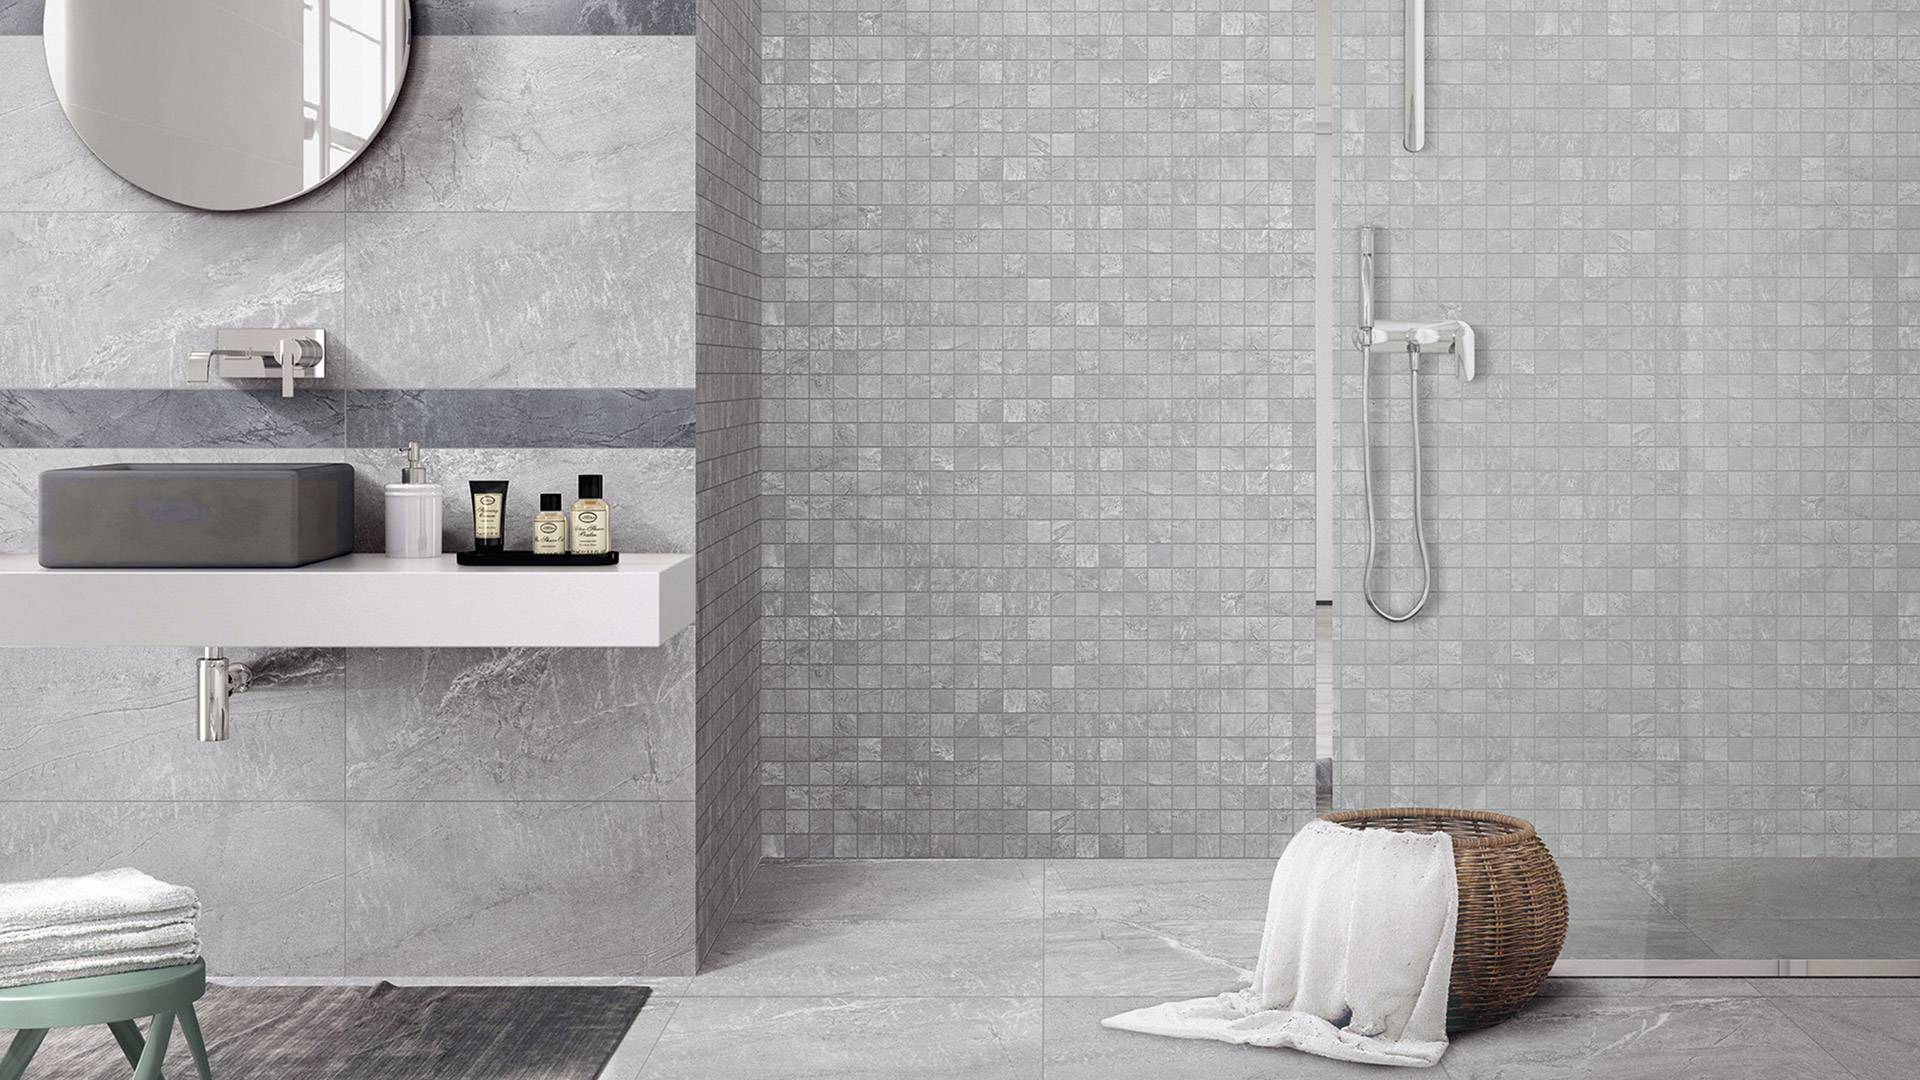 Tiles installed in shower